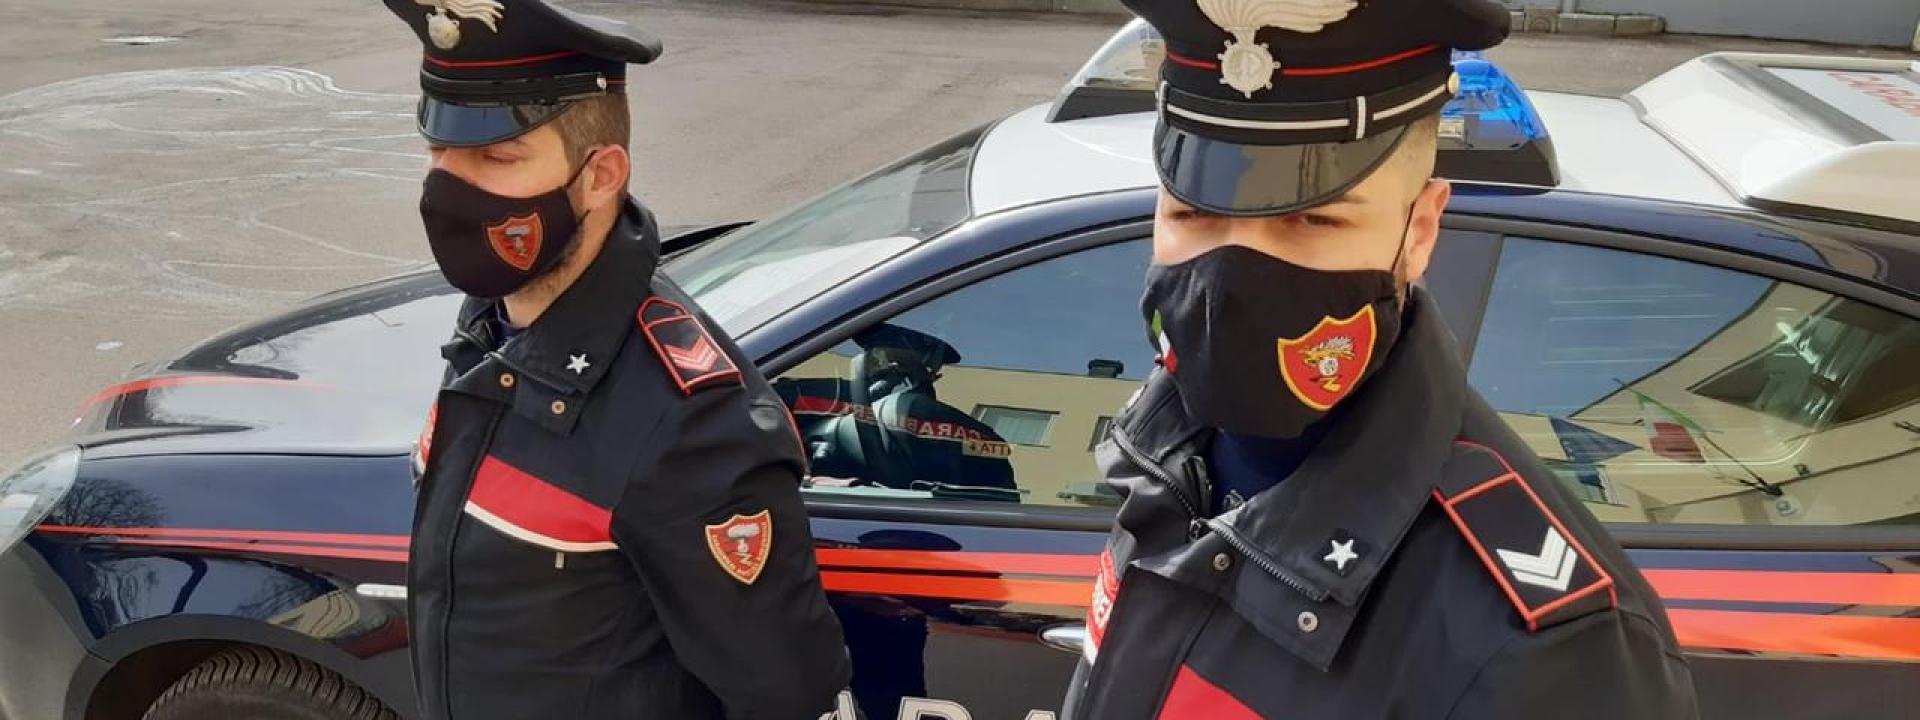 Marche - Chiamati a sedare una lite familiare, i carabinieri in casa trovano l'hashish